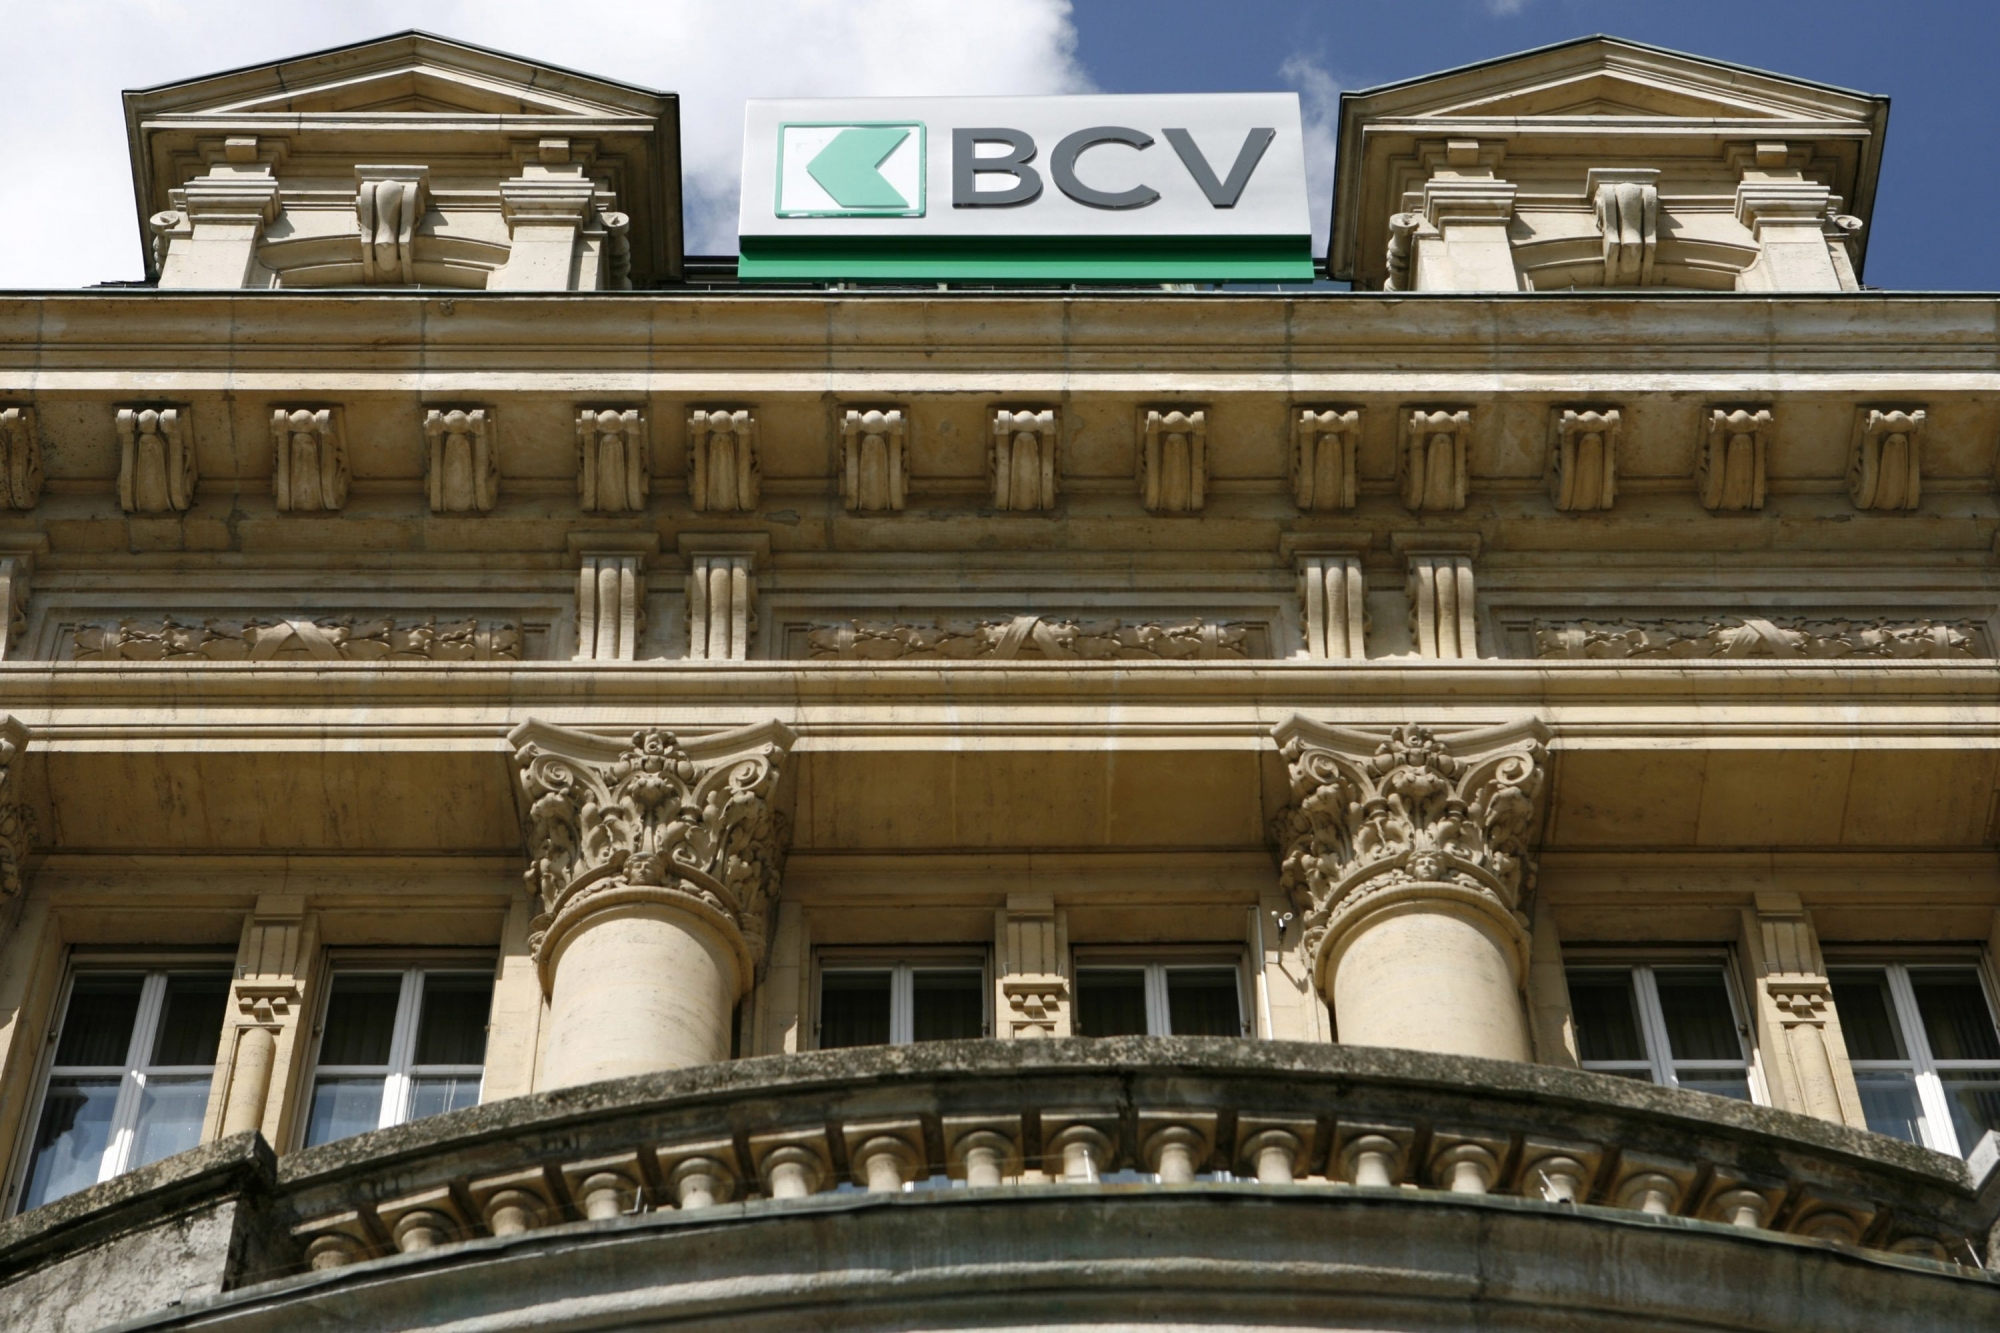 Le siege de la Banque Cantonale Vaudoise, BCV, photographie avec les nouvelles enseignes ce mardi 18 avril 2006 a Lausanne. (KEYSTONE/Laurent Gillieron) SCHWEIZ BCV HAUPTSITZ